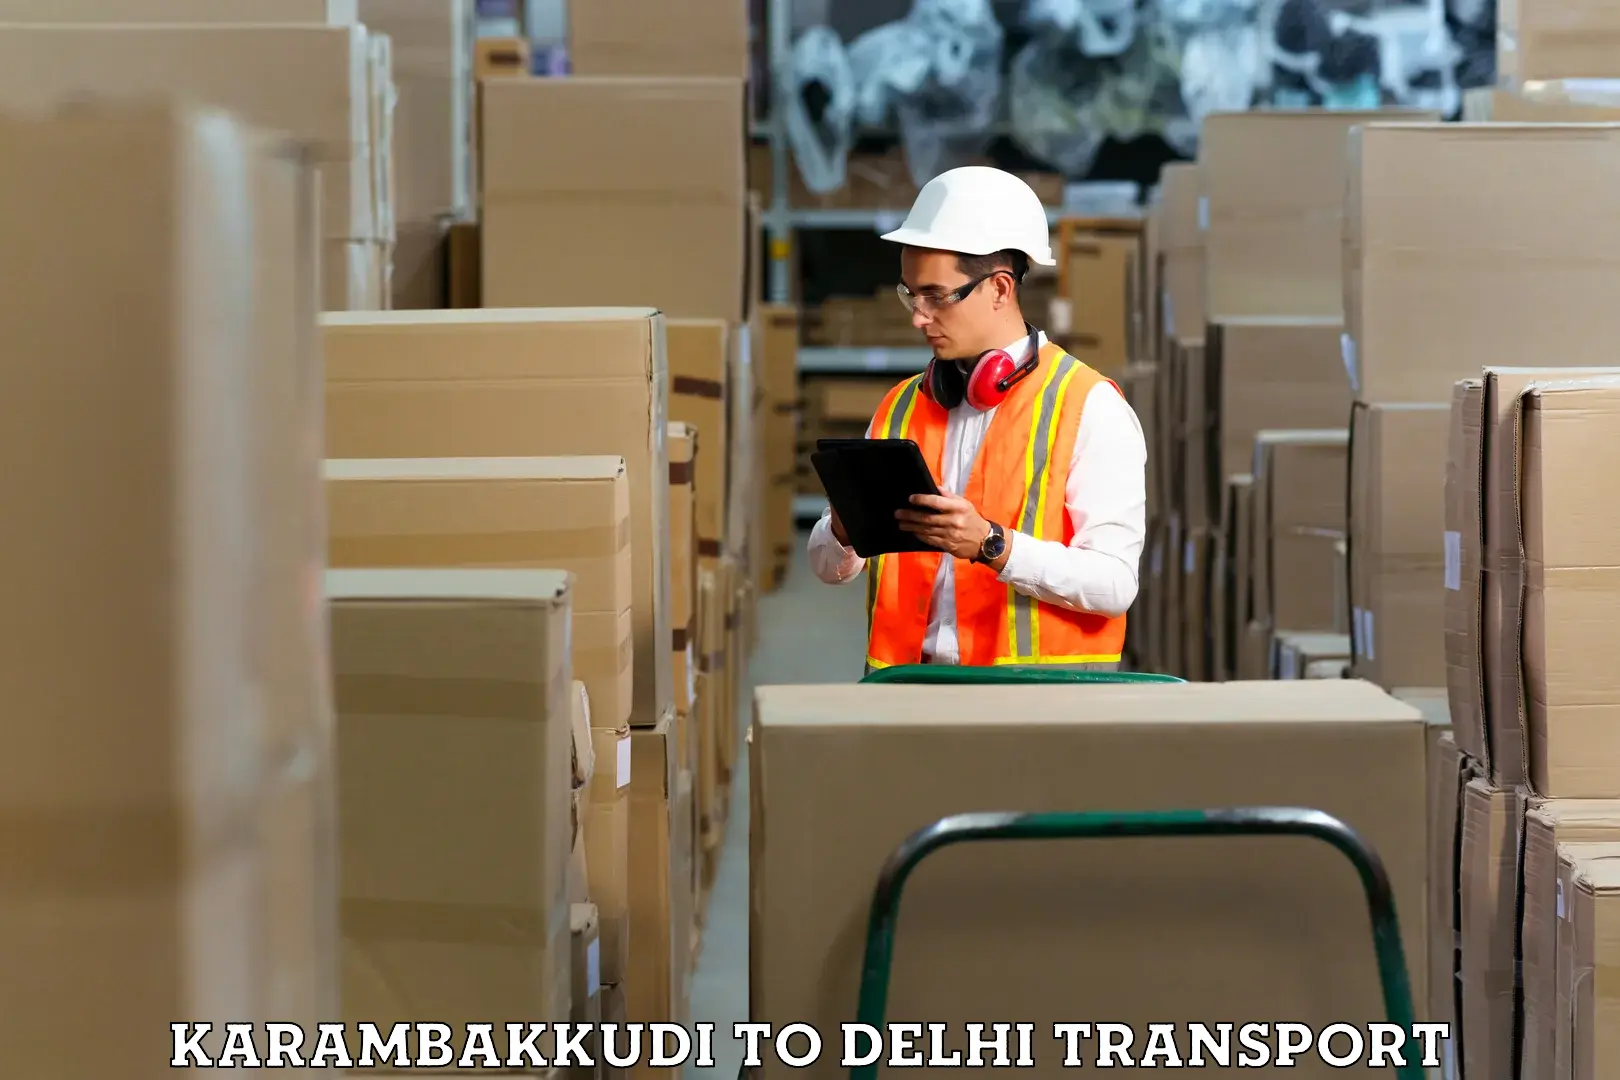 Shipping services Karambakkudi to Delhi